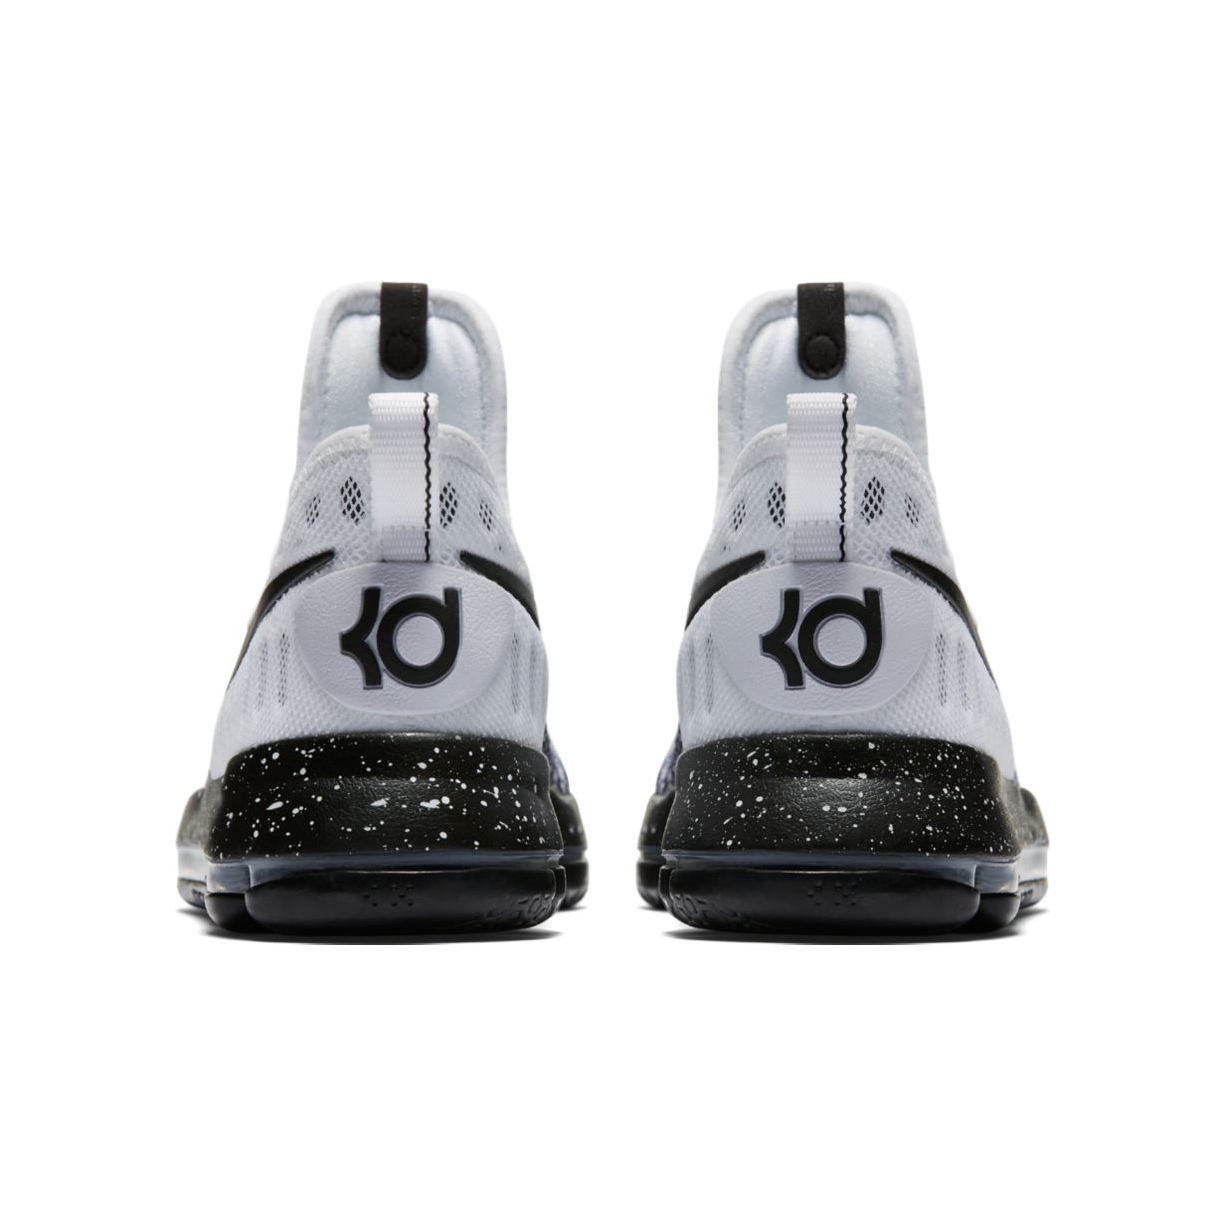 Rebotar preferir río Nike Zoom KD 9 GS "Mini Oreo" (100/white/black)